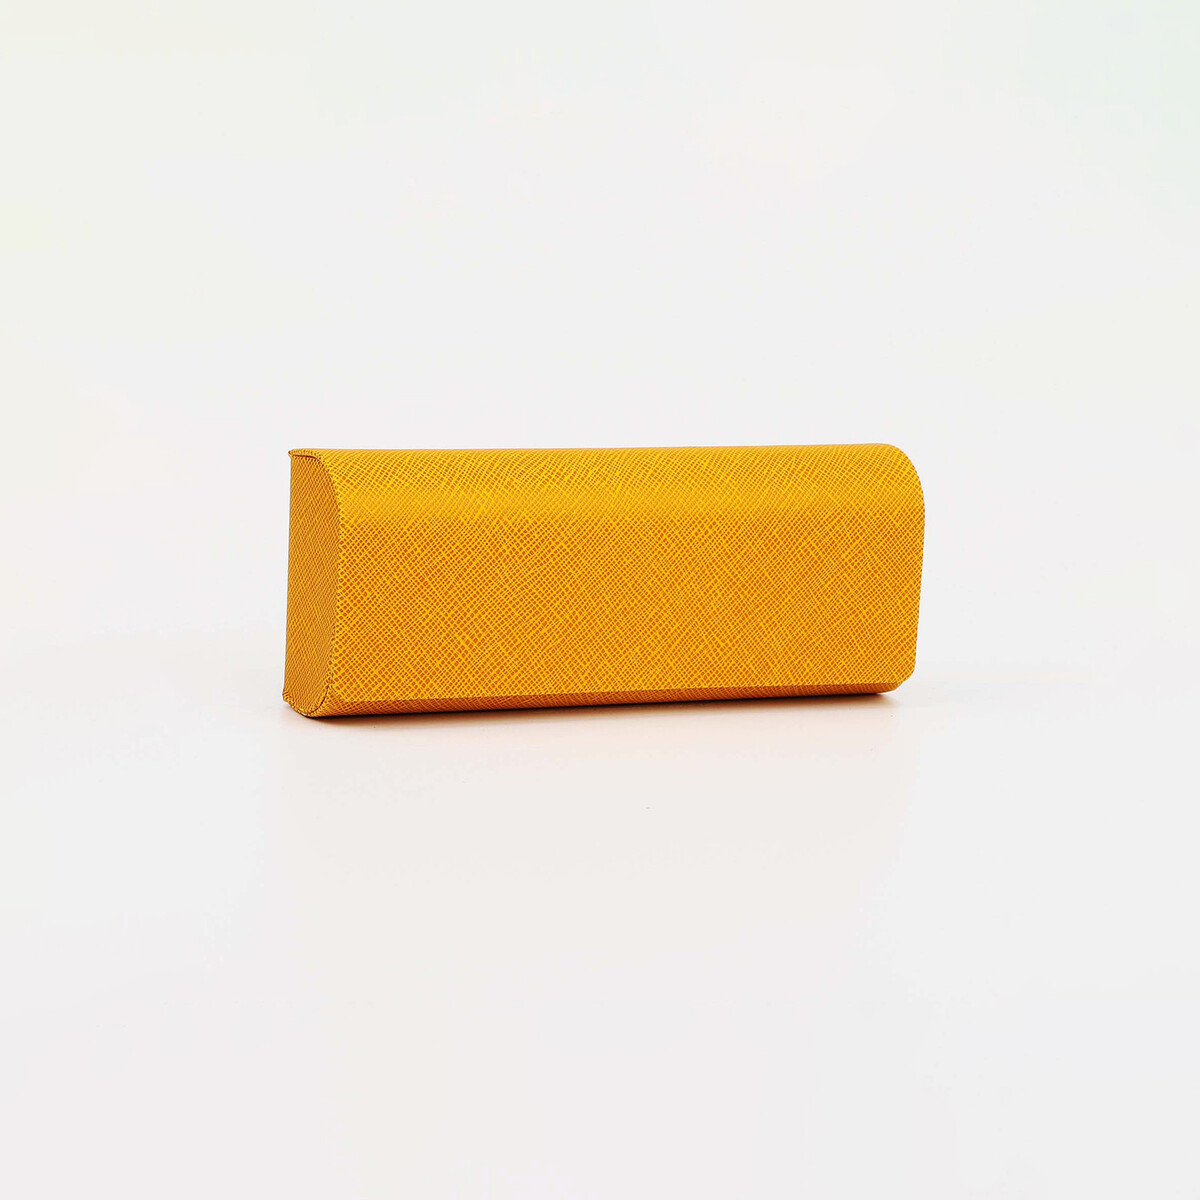 Футляр для очков на магните, 15.5 см х 3 см х 6 см, салфетка, цвет желтый